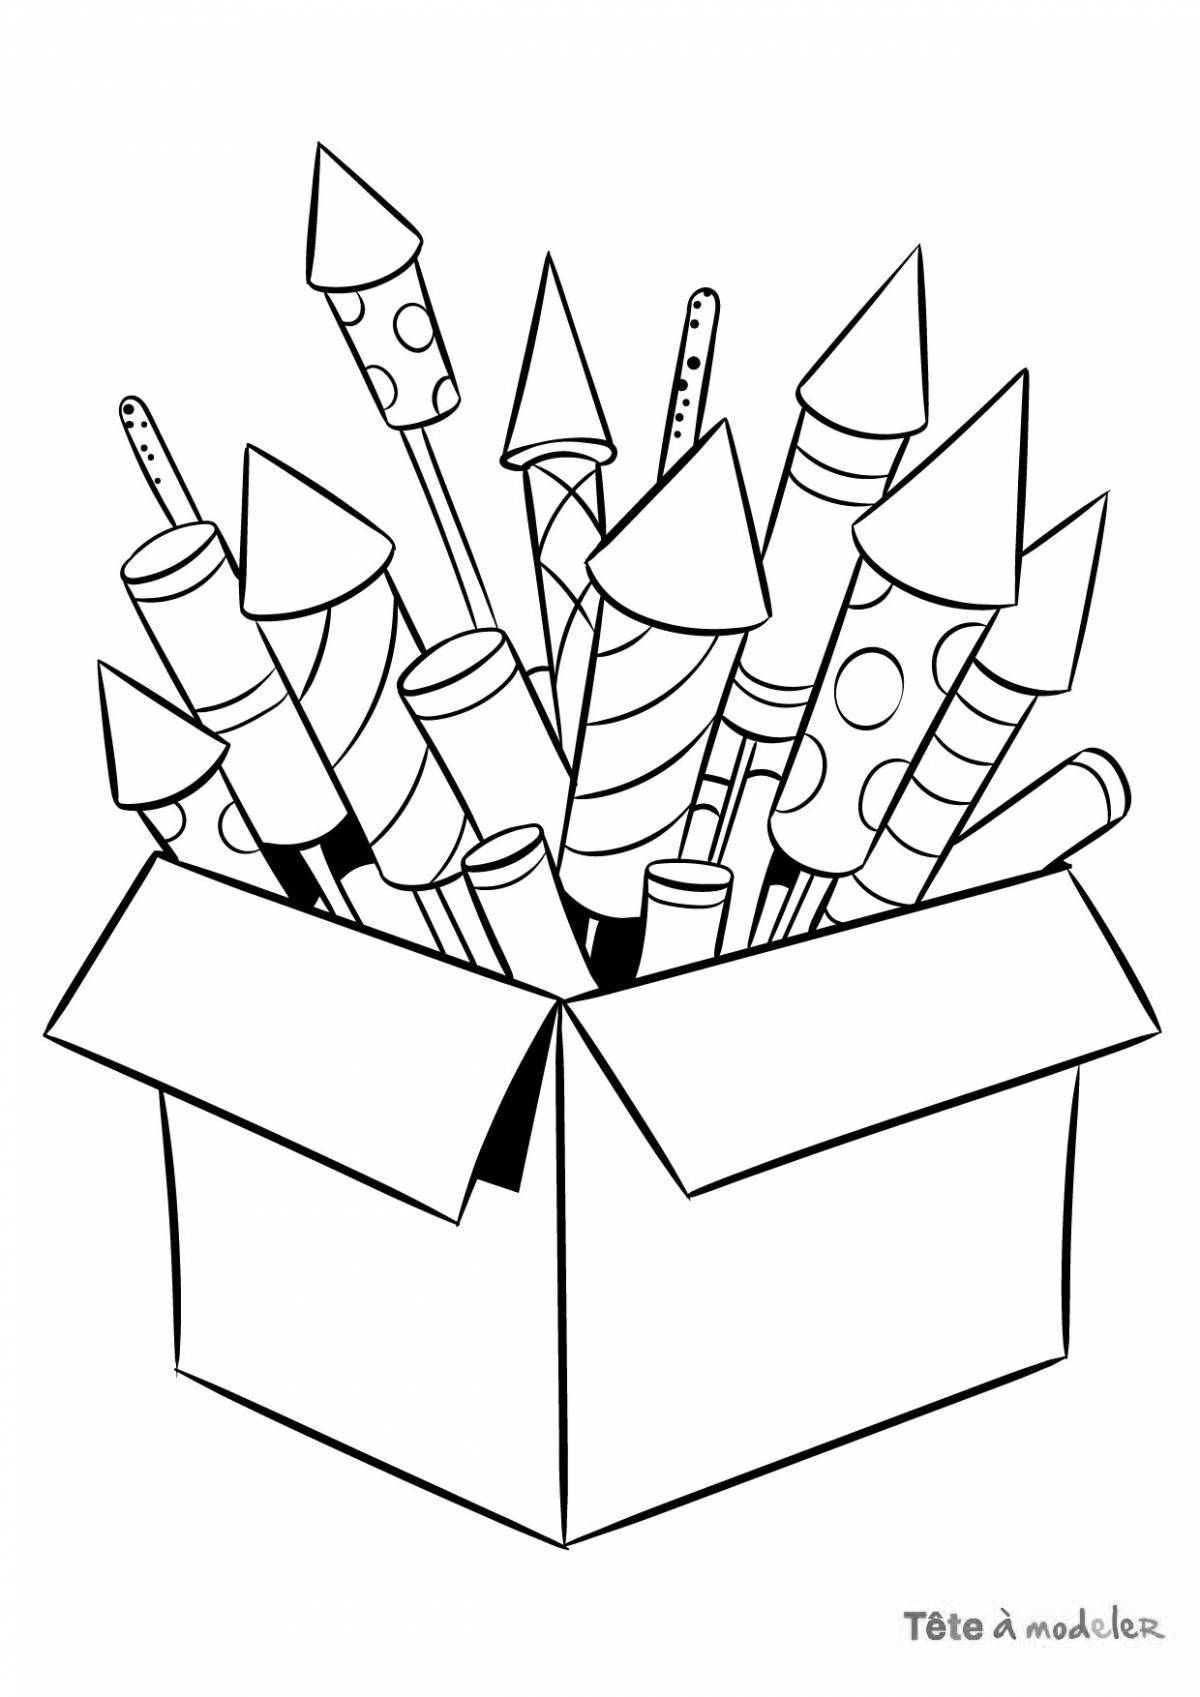 Раскраска «игривая коробка карандашей»